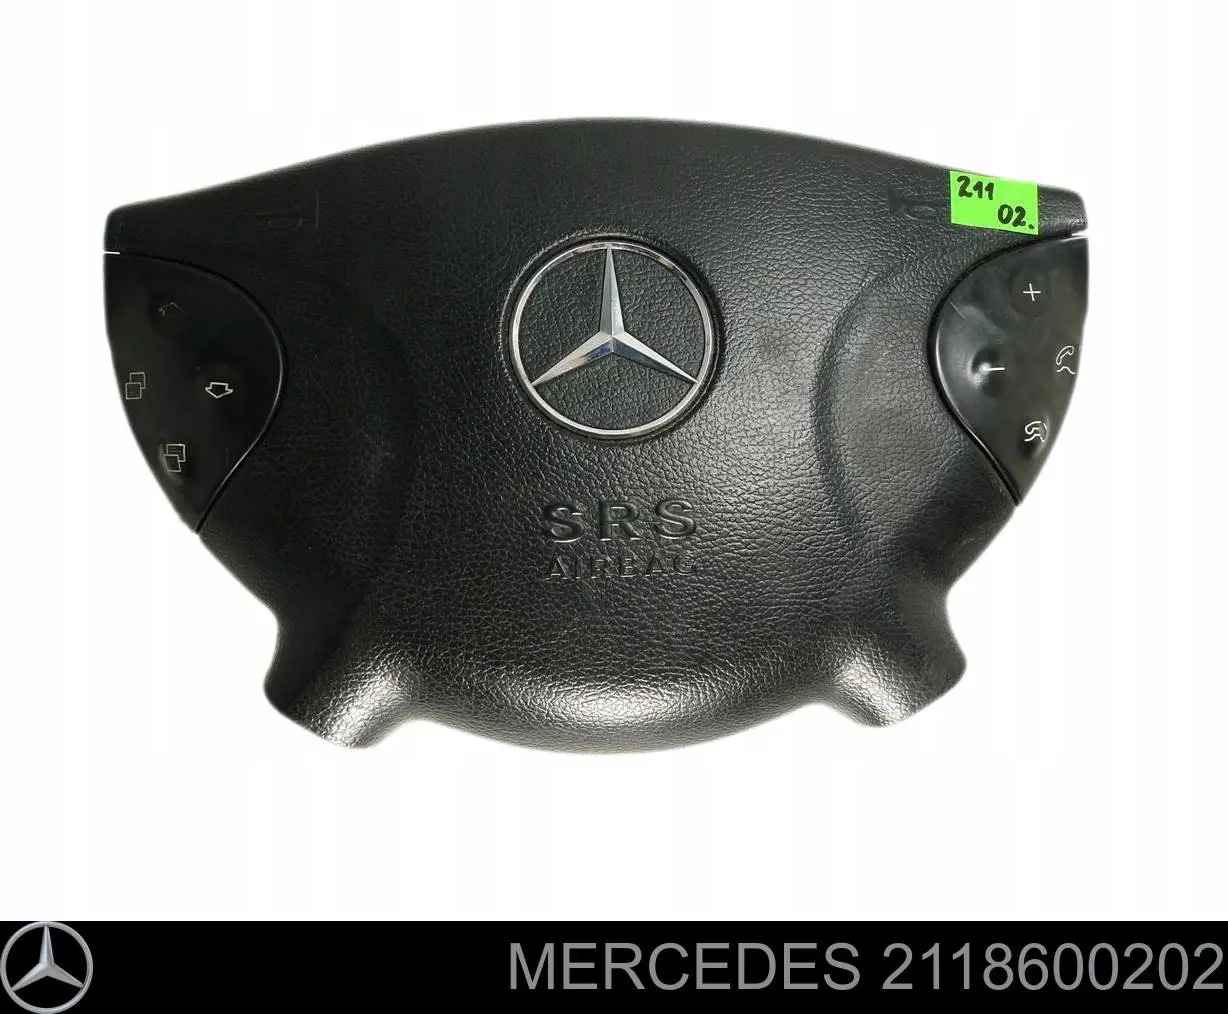 2118600202 Mercedes cinto de segurança (airbag de condutor)